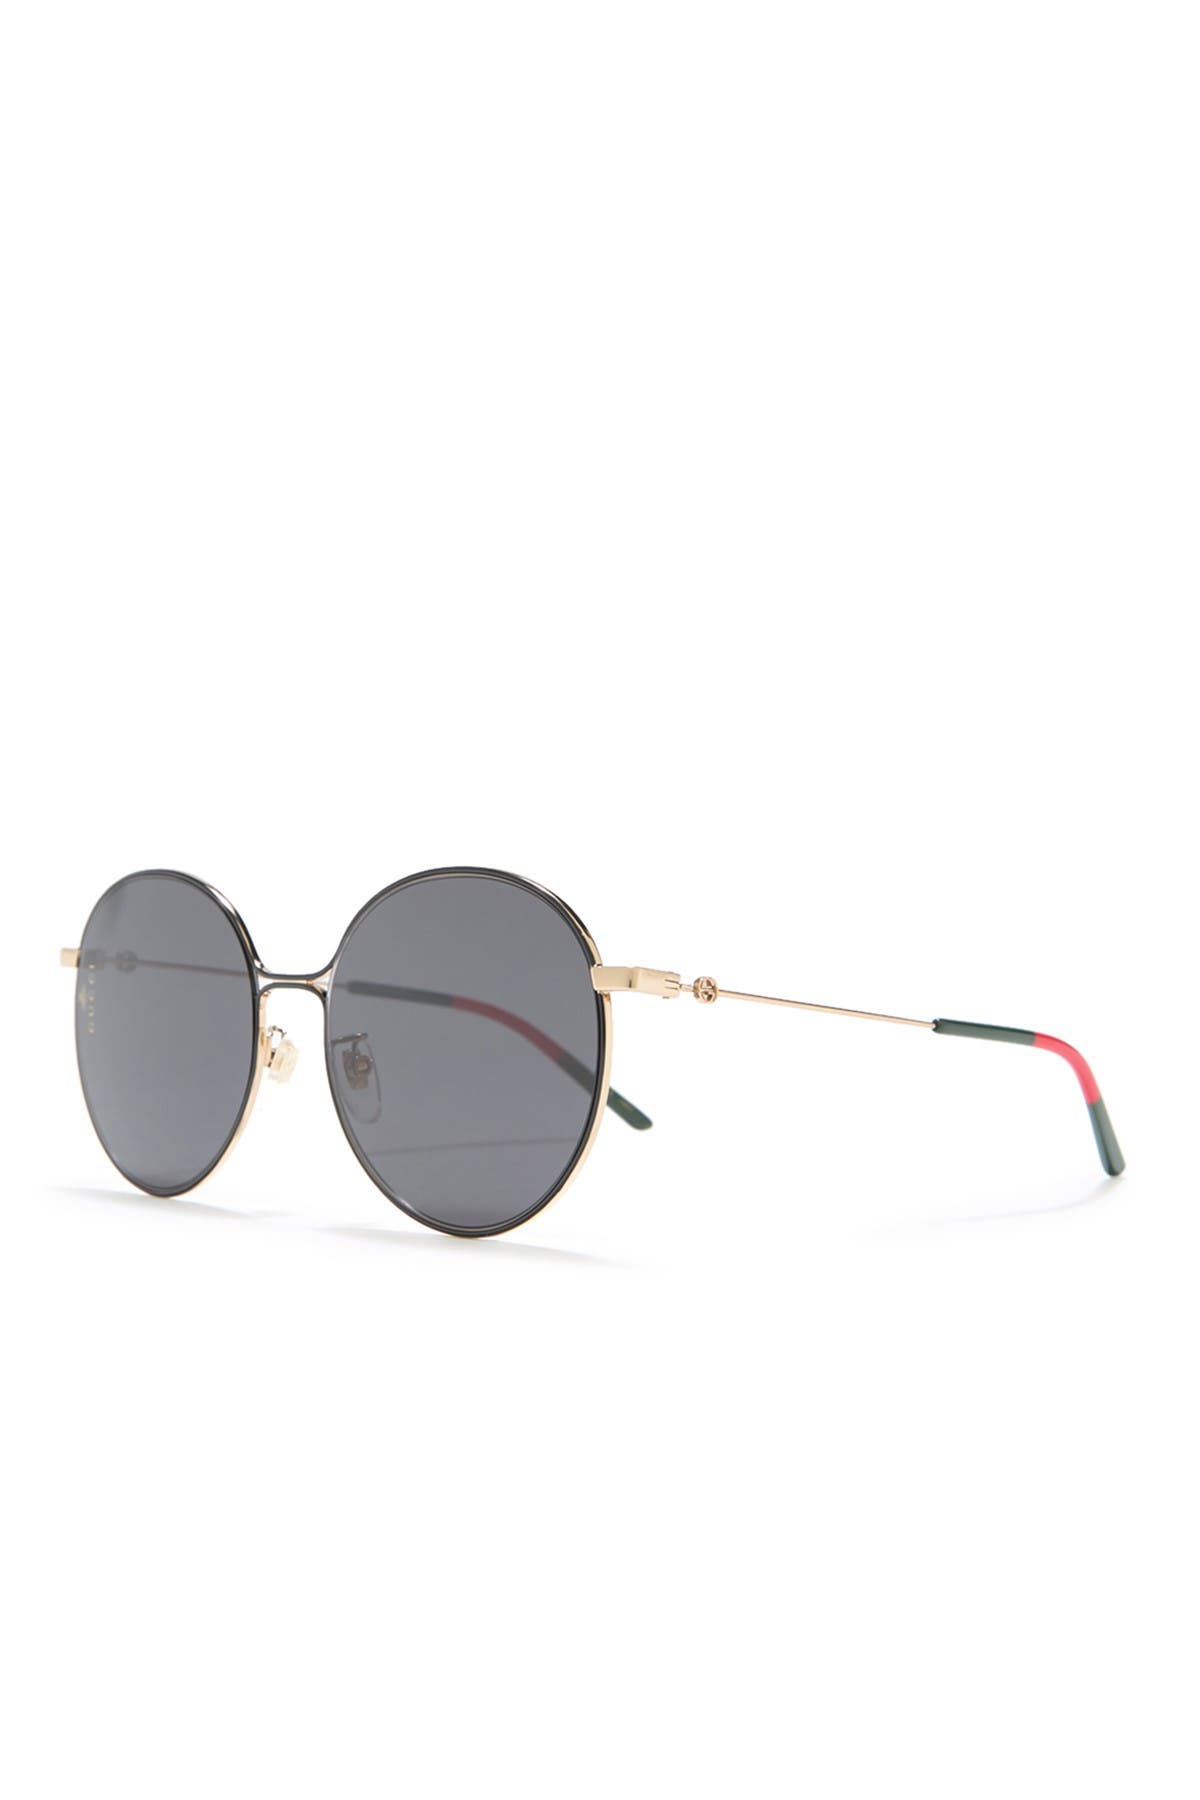 gucci modified round 56mm sunglasses